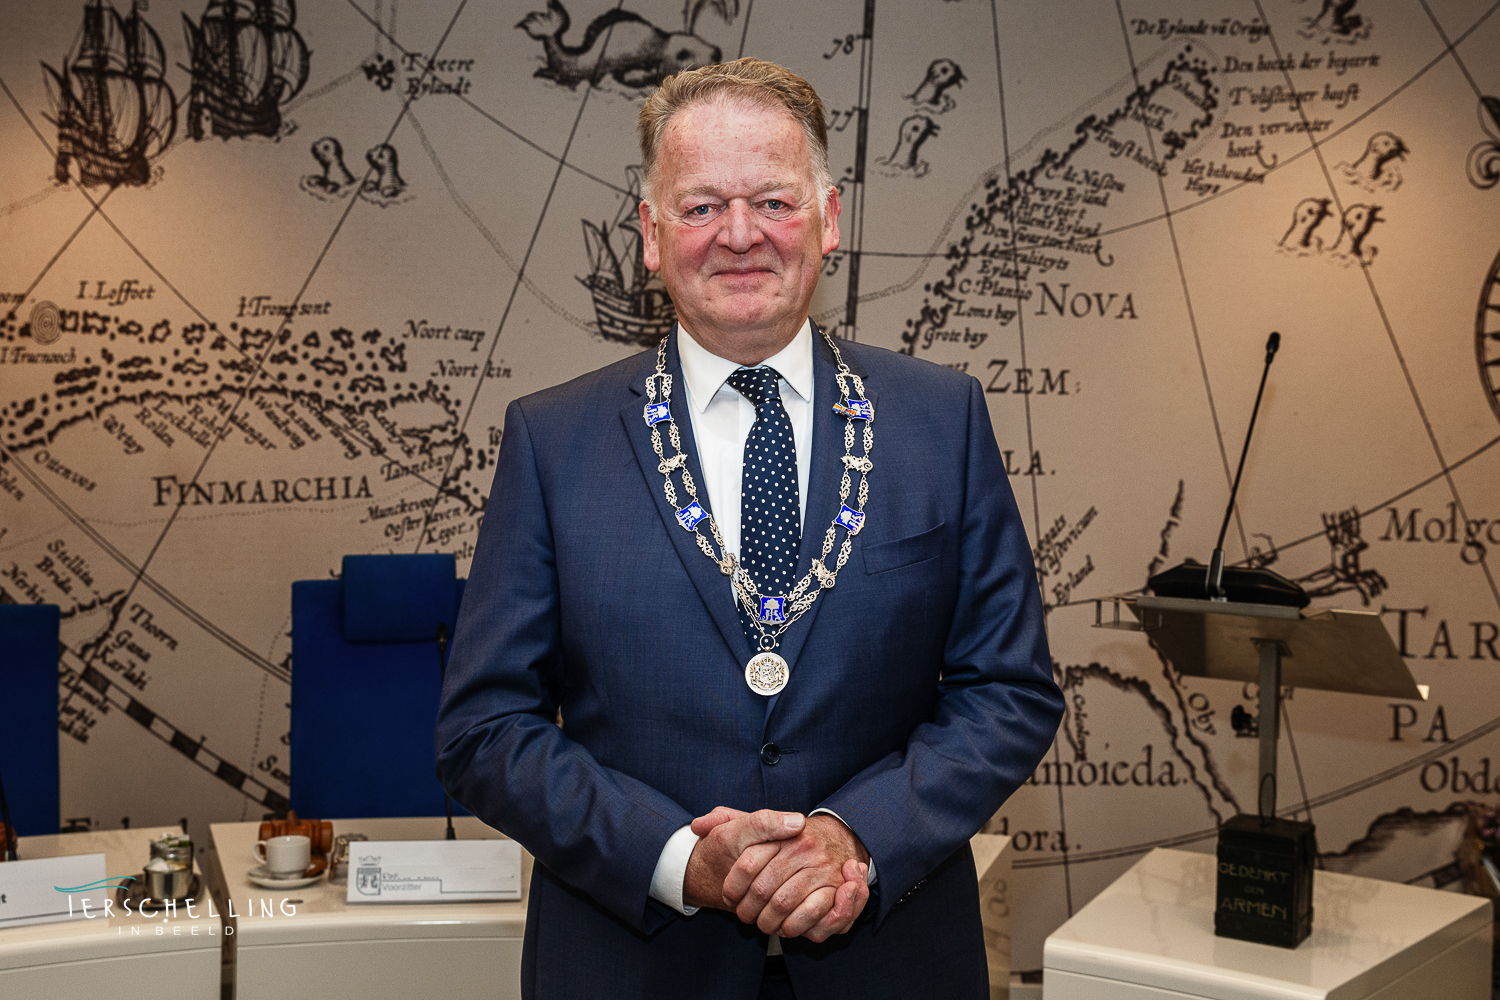 Foto van de tijdelijke burgemeester van Terschelling in opdracht van / voor de gemeente Terschelling. "Onze tijdelijke burgemeester en de raad voor de lens voor dat de vergadering begint."